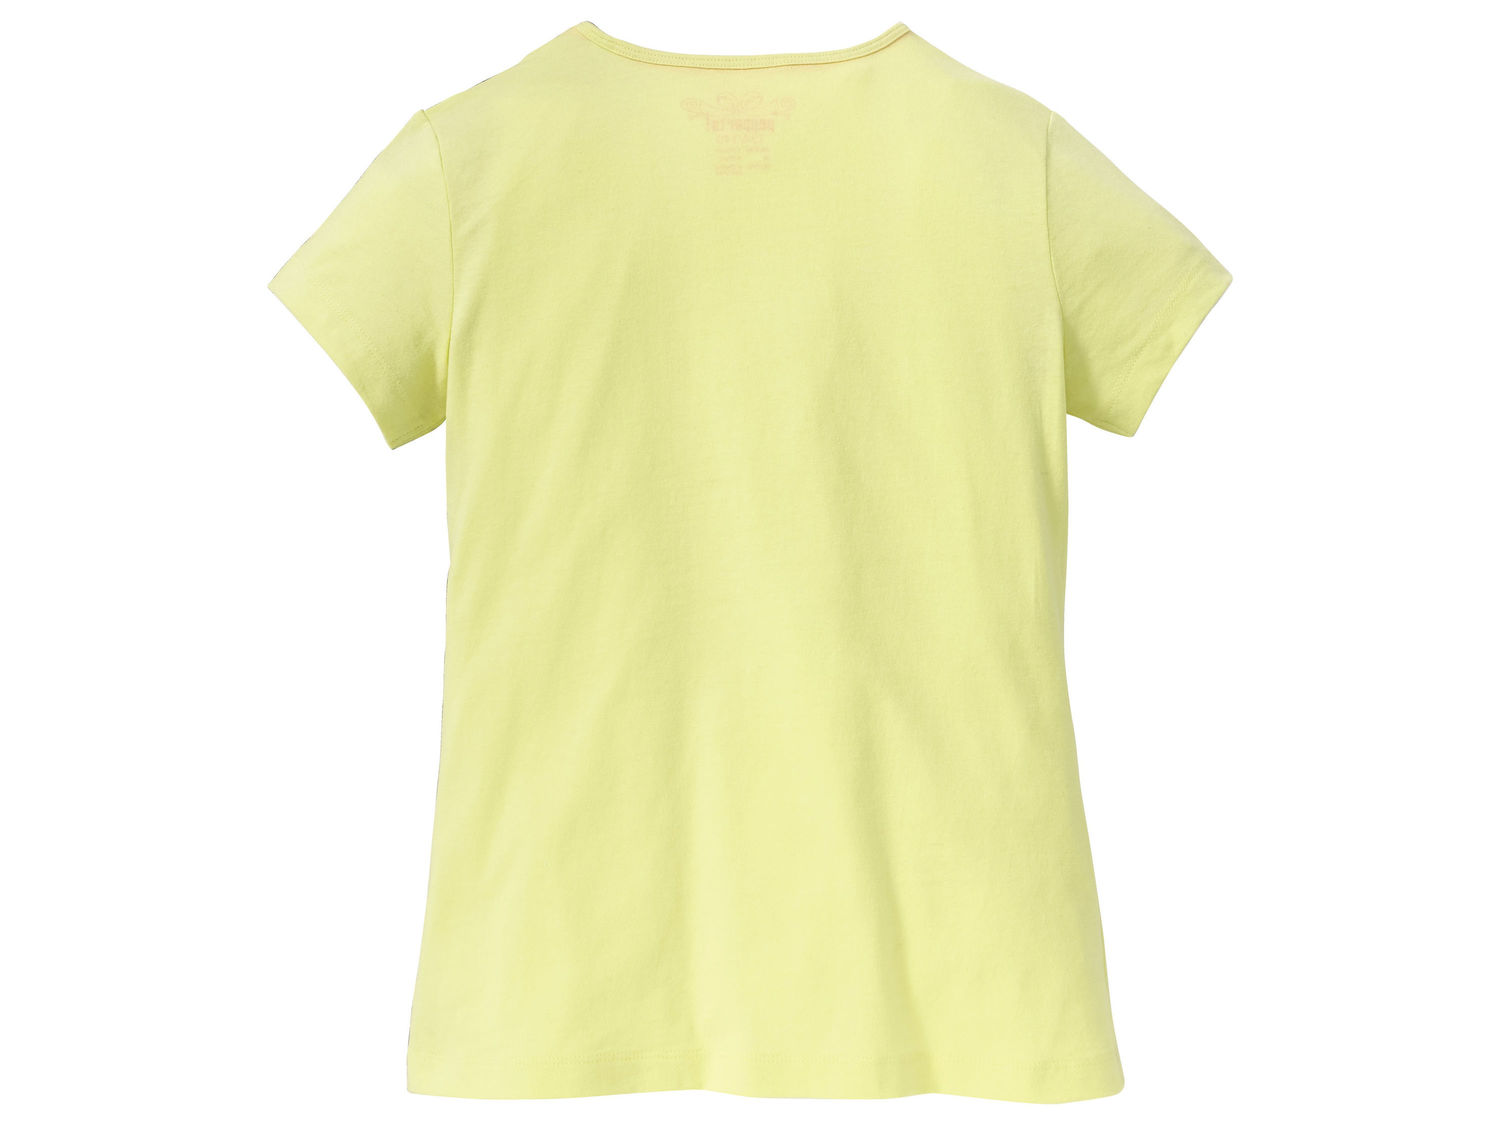 T-shirt Pepperts, cena 8,99 PLN 
- 100% bawełny
- rozmiary: 122-152
- wakacyjne ...